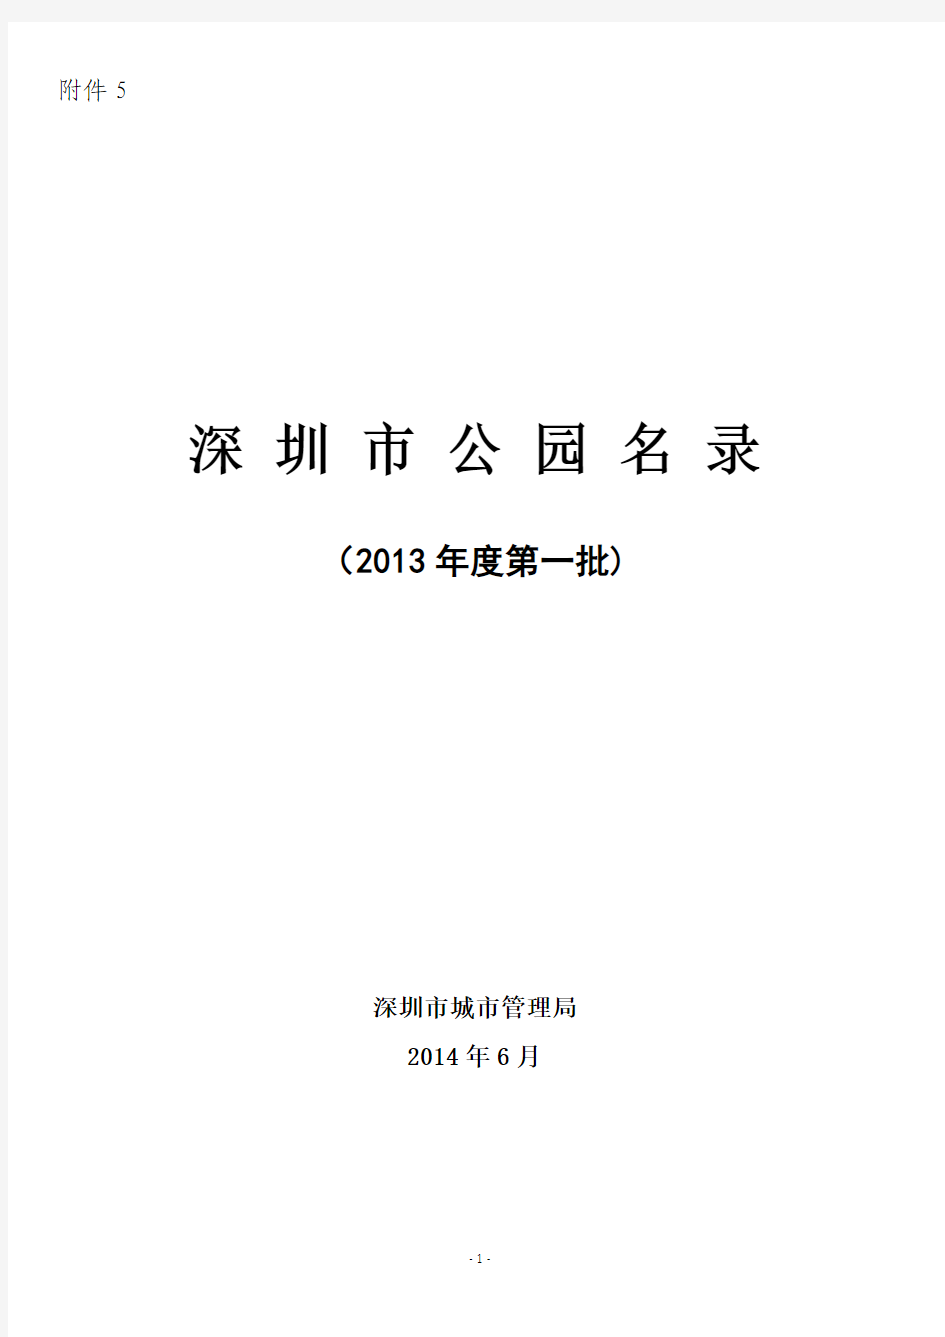 深圳市公园名录(更新至2014年6月)